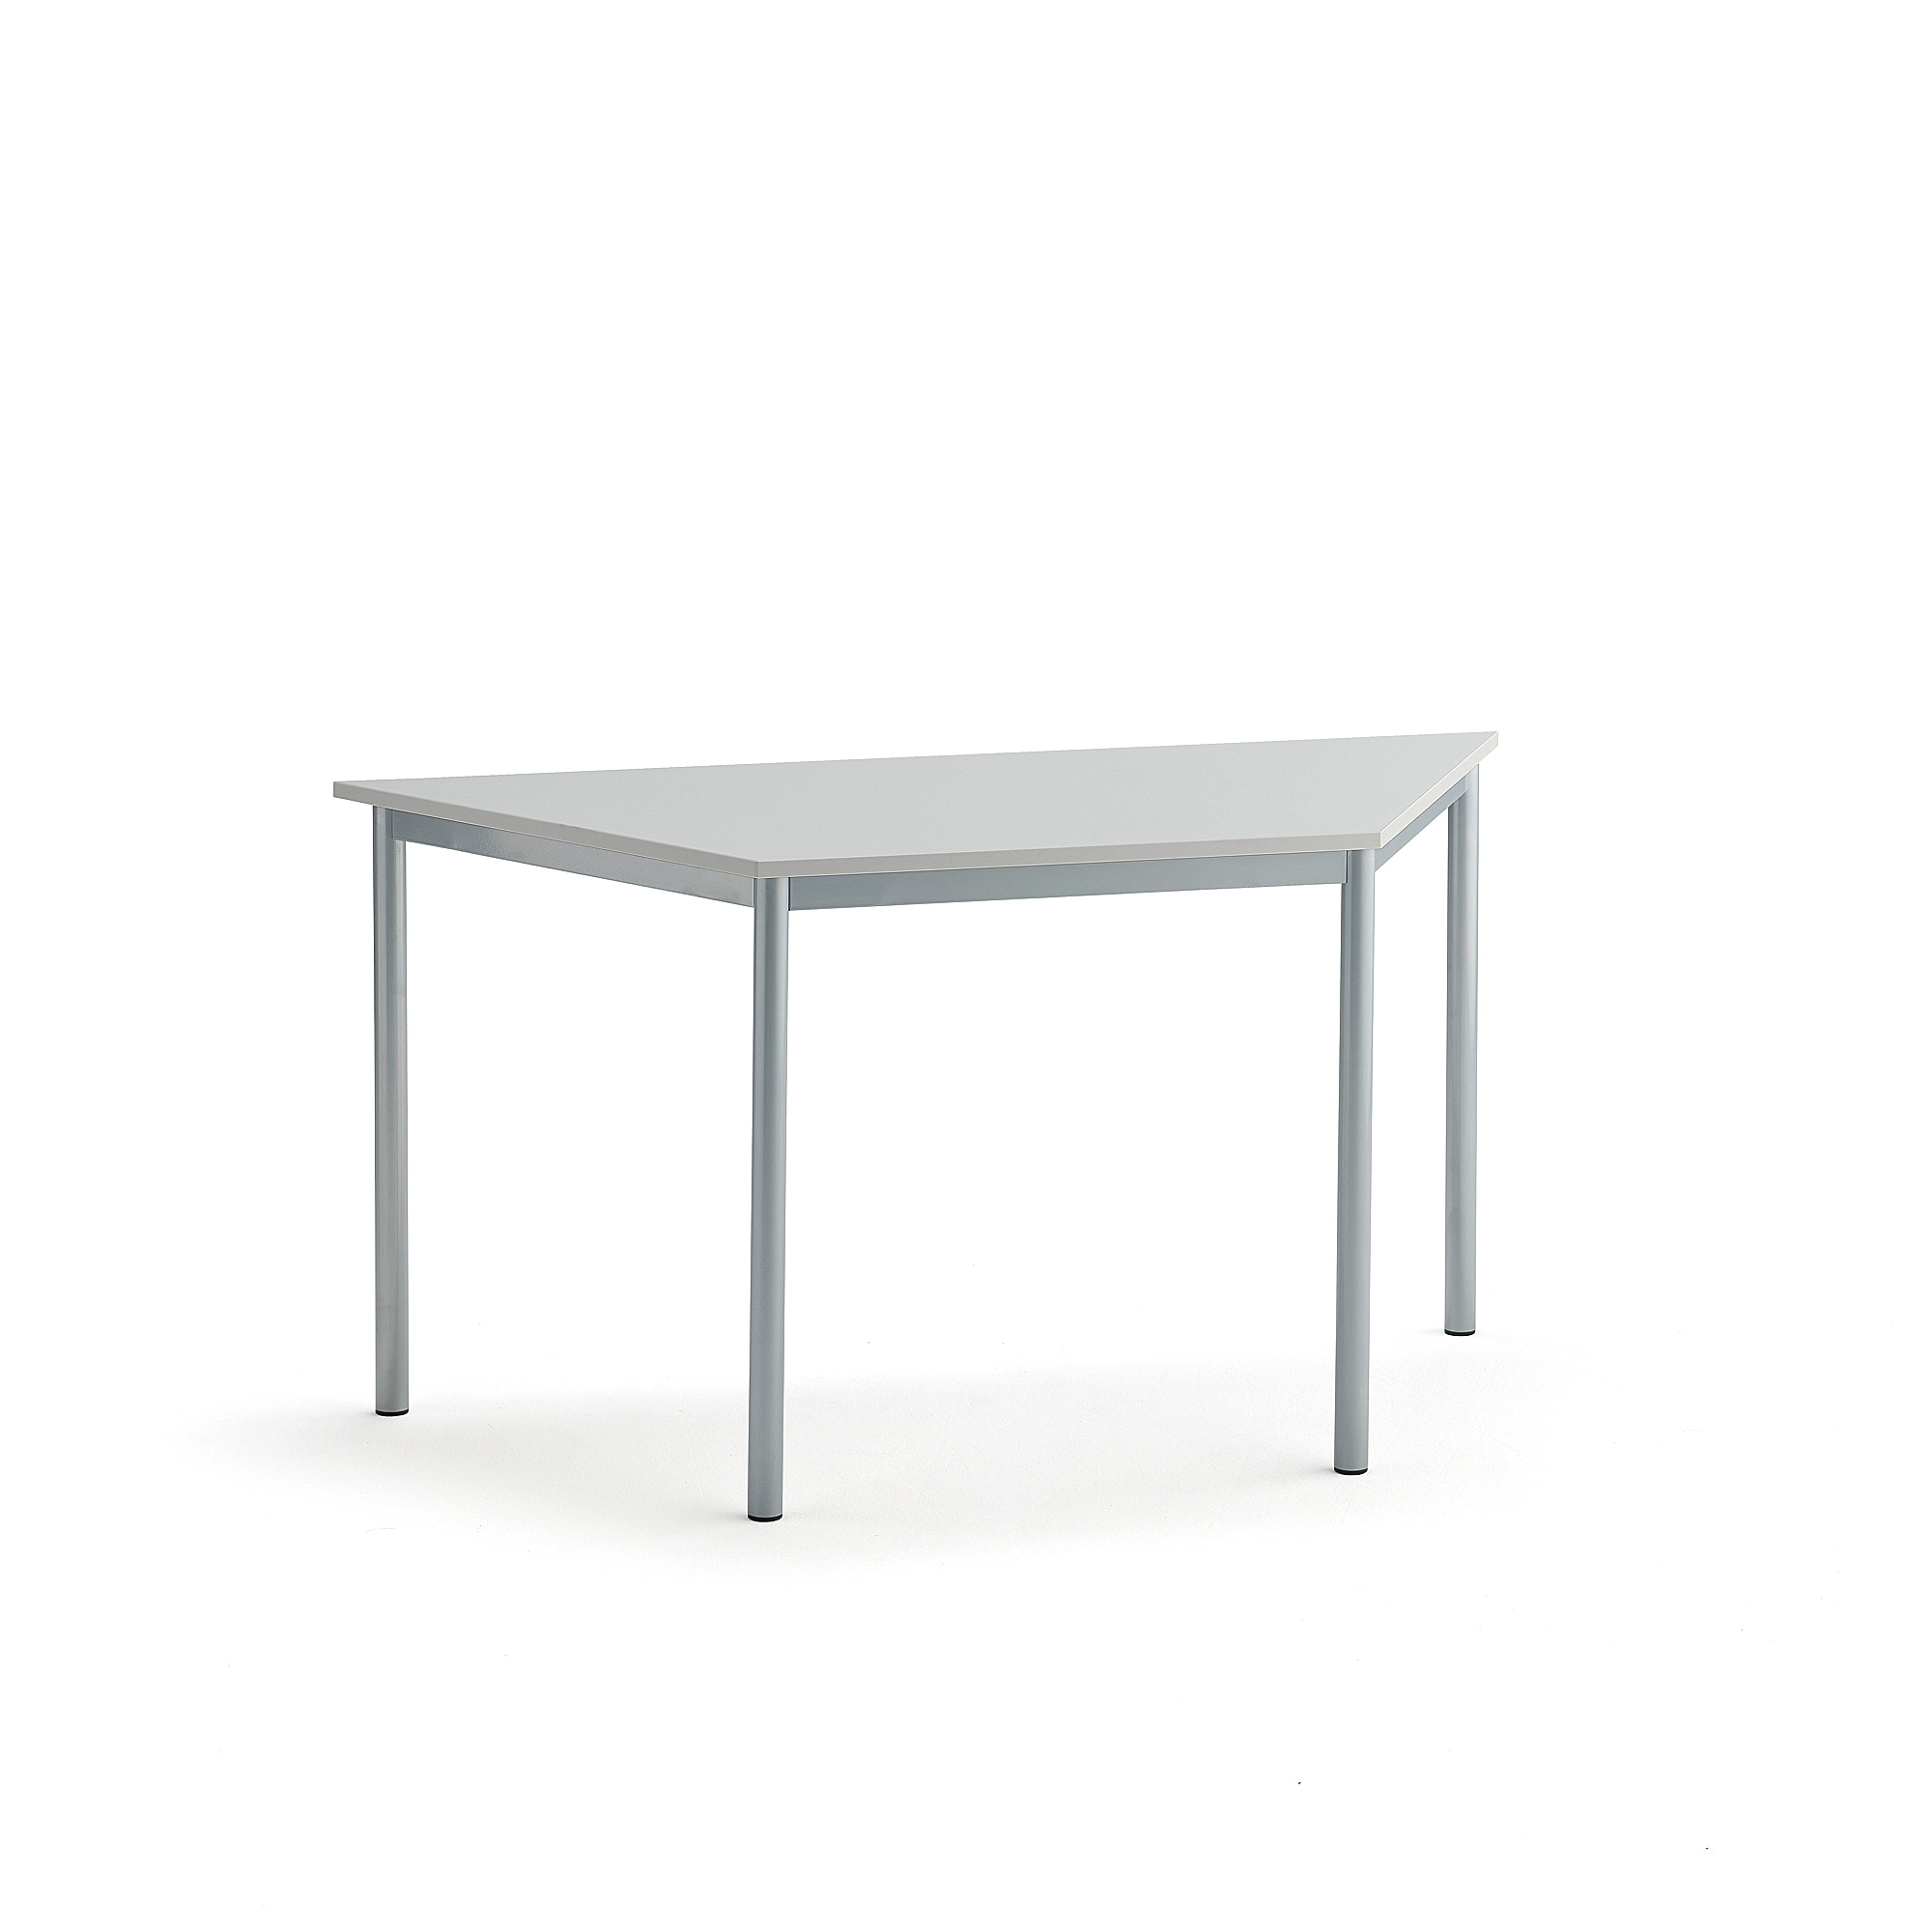 Stůl SONITUS TRAPETS, 1400x700x720 mm, stříbrné nohy, HPL deska tlumící hluk, šedá